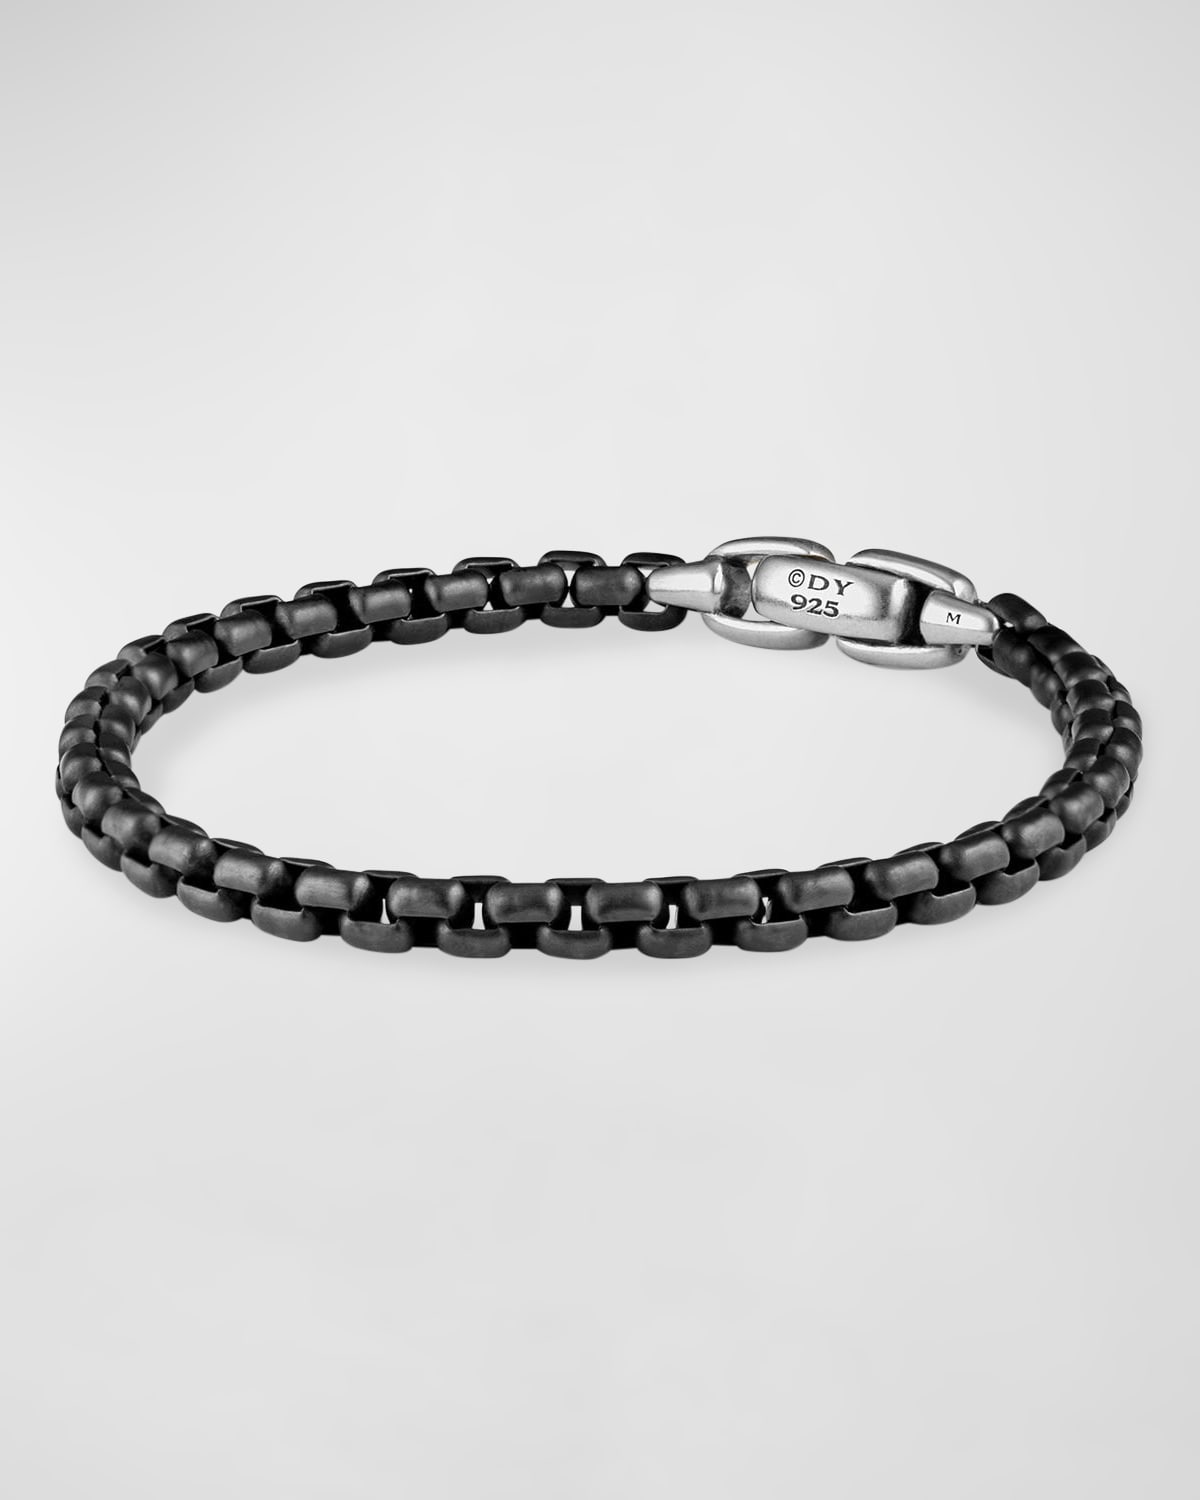 Men's Box Chain Bracelet in Darkened Silver, 5mm